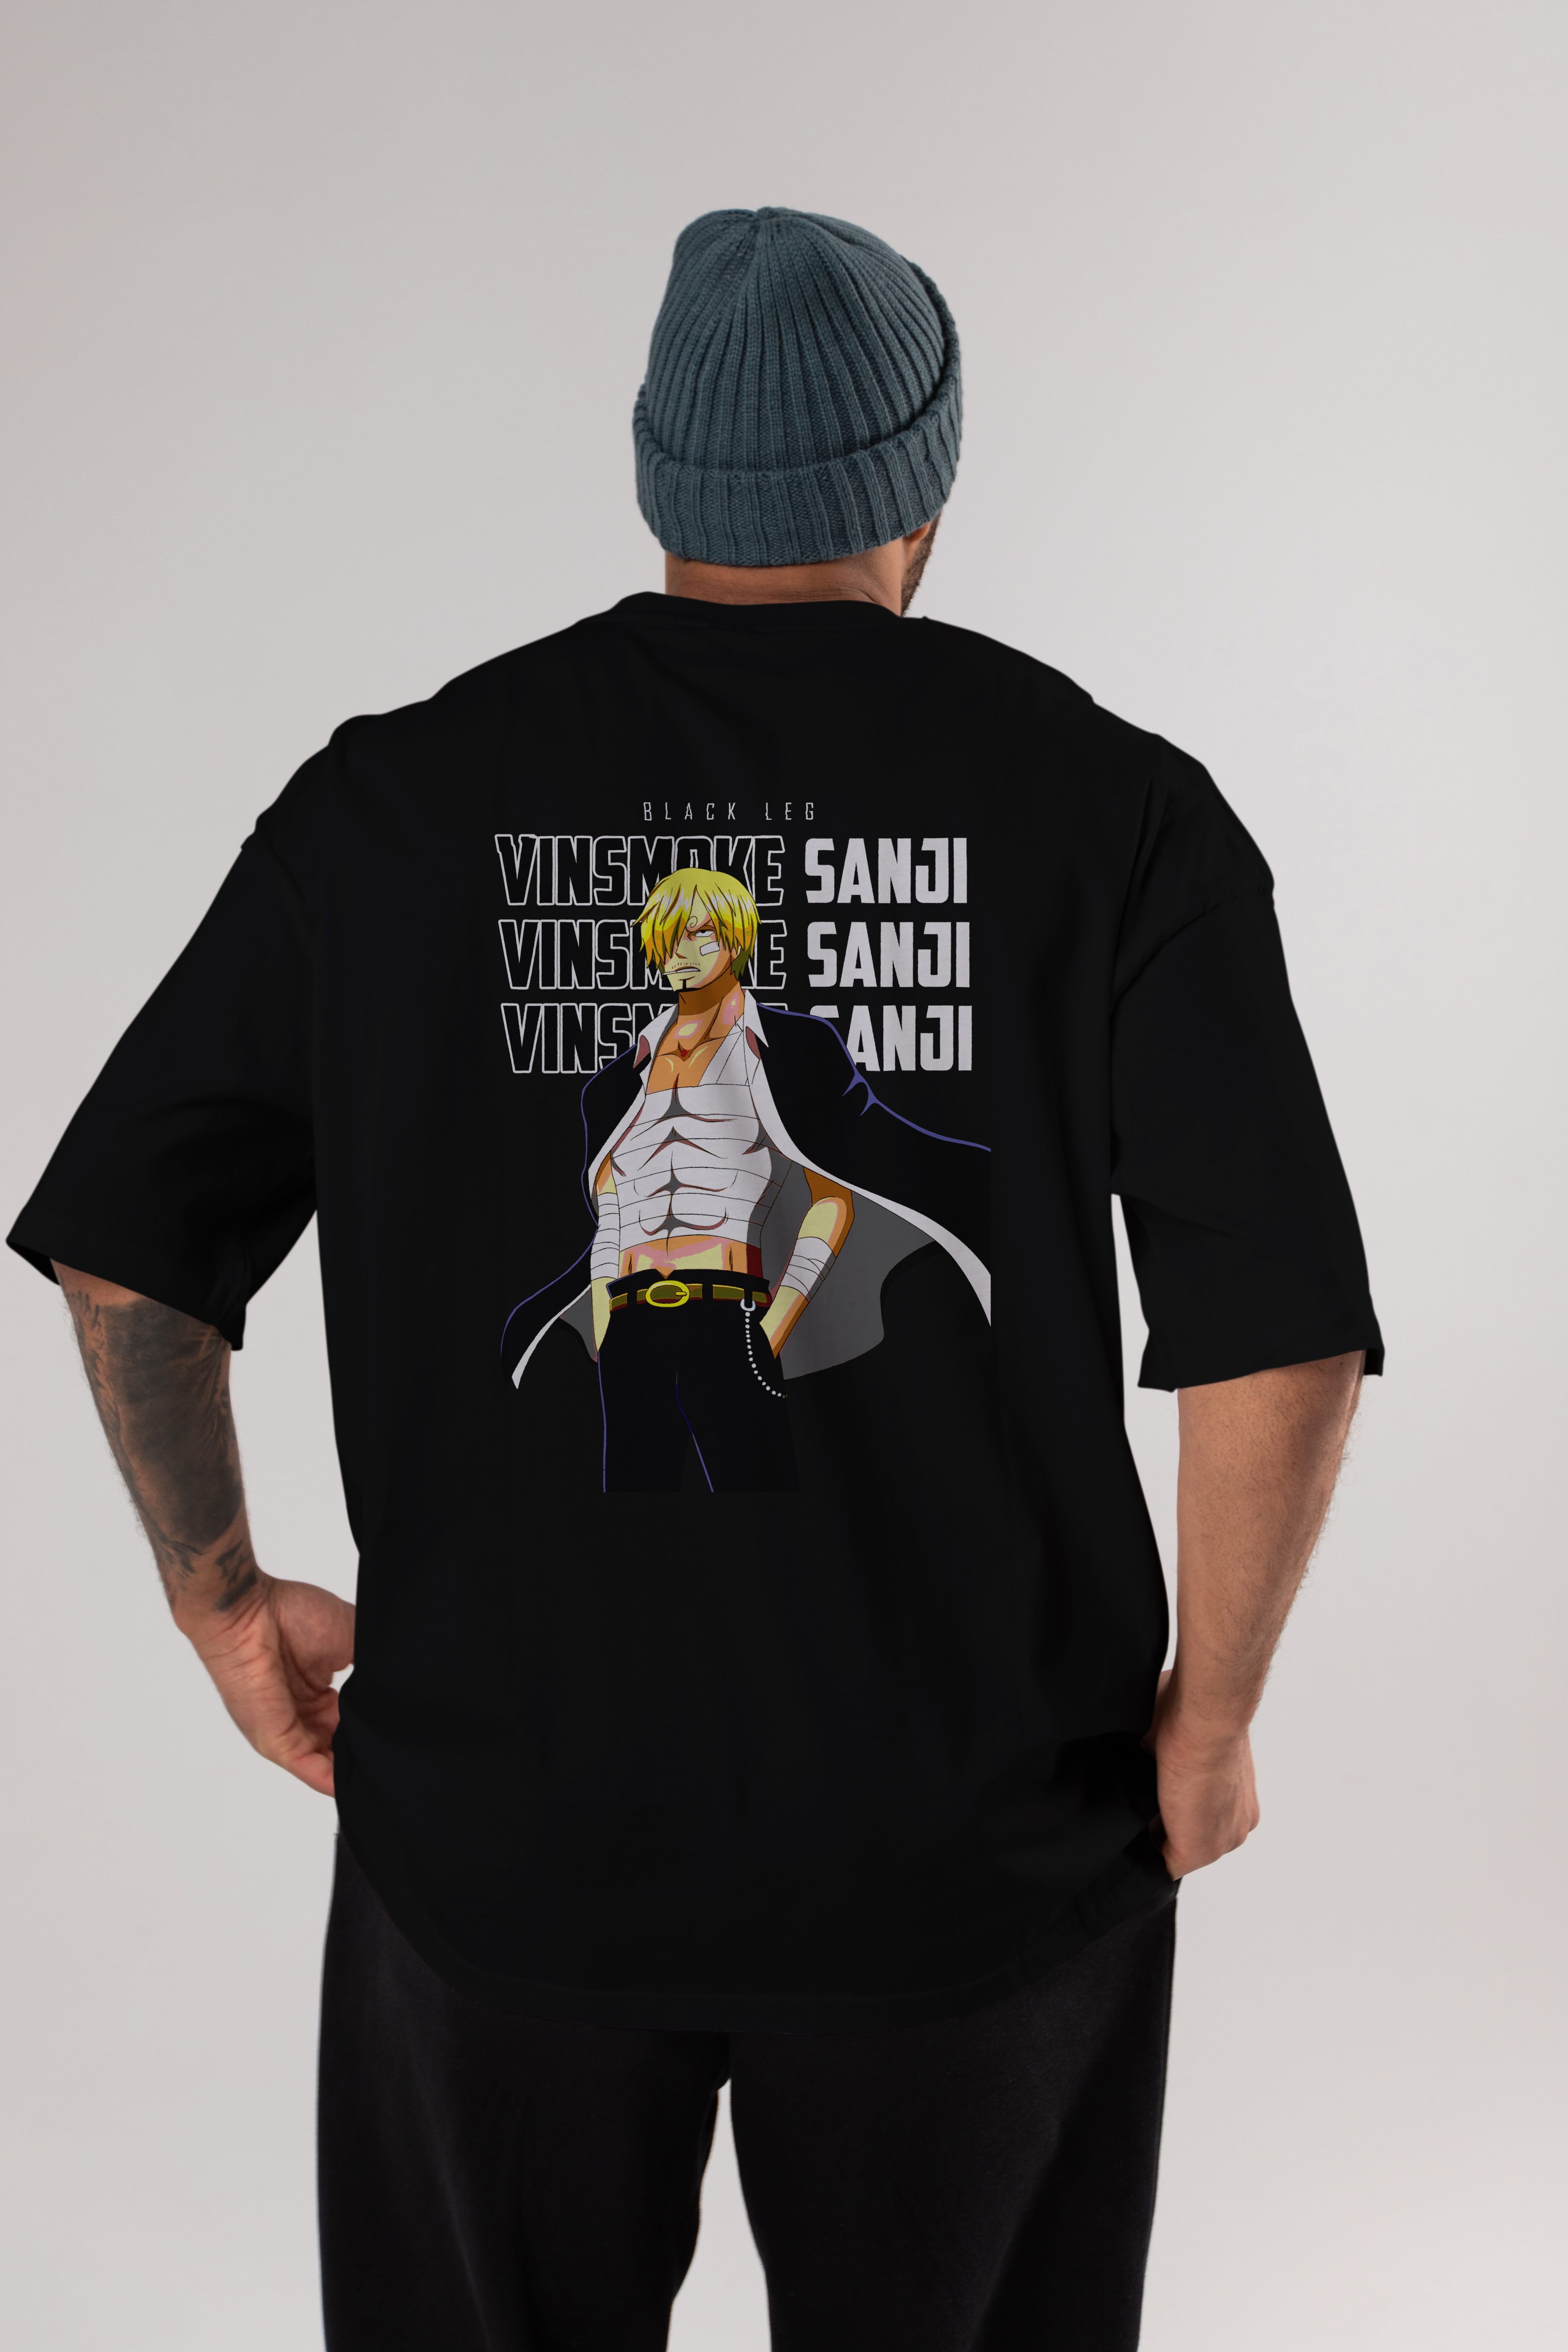 Sanji Anime Arka Baskılı Oversize t-shirt Erkek Kadın Unisex %100 pamuk tişort